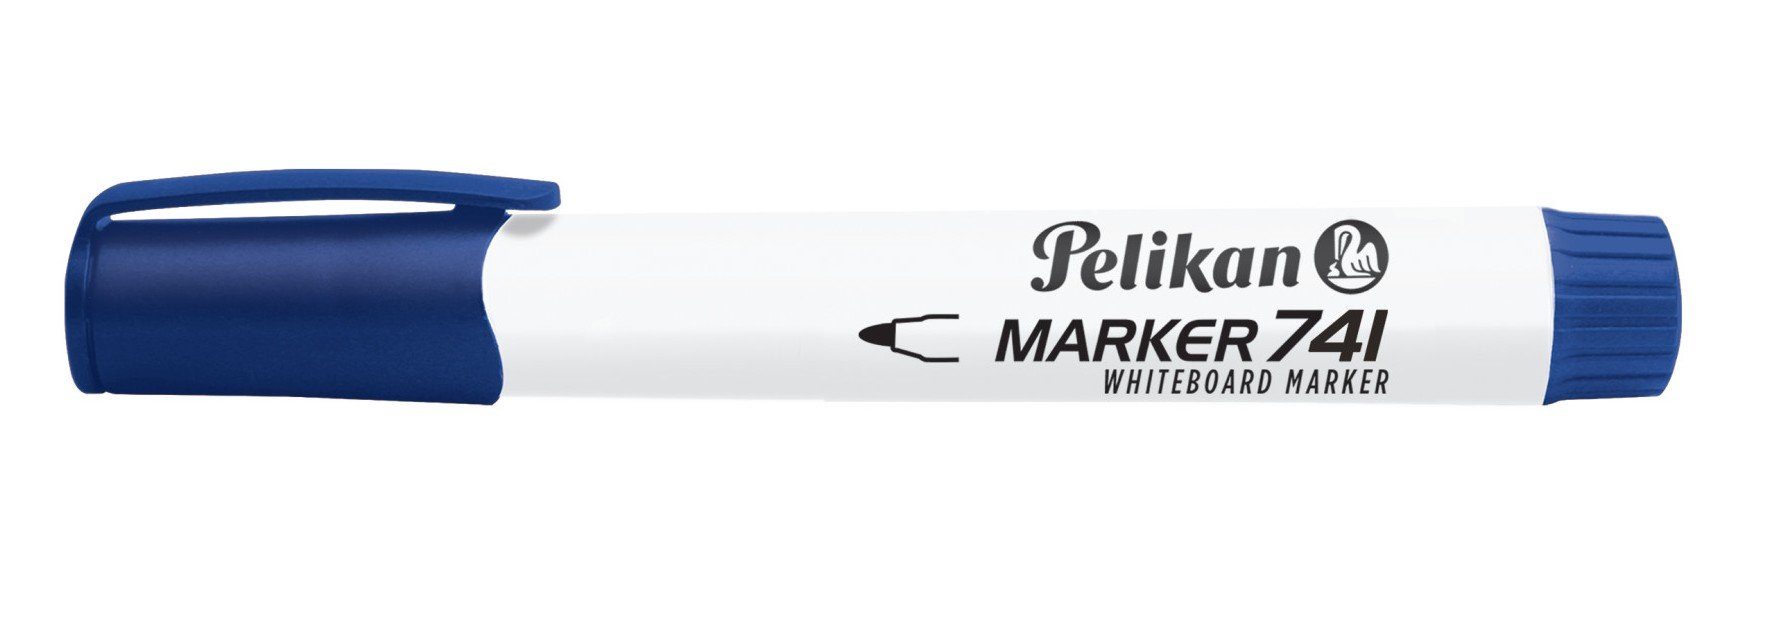 Whiteboard Marker blau 741 Pelikan Pelikan Marker